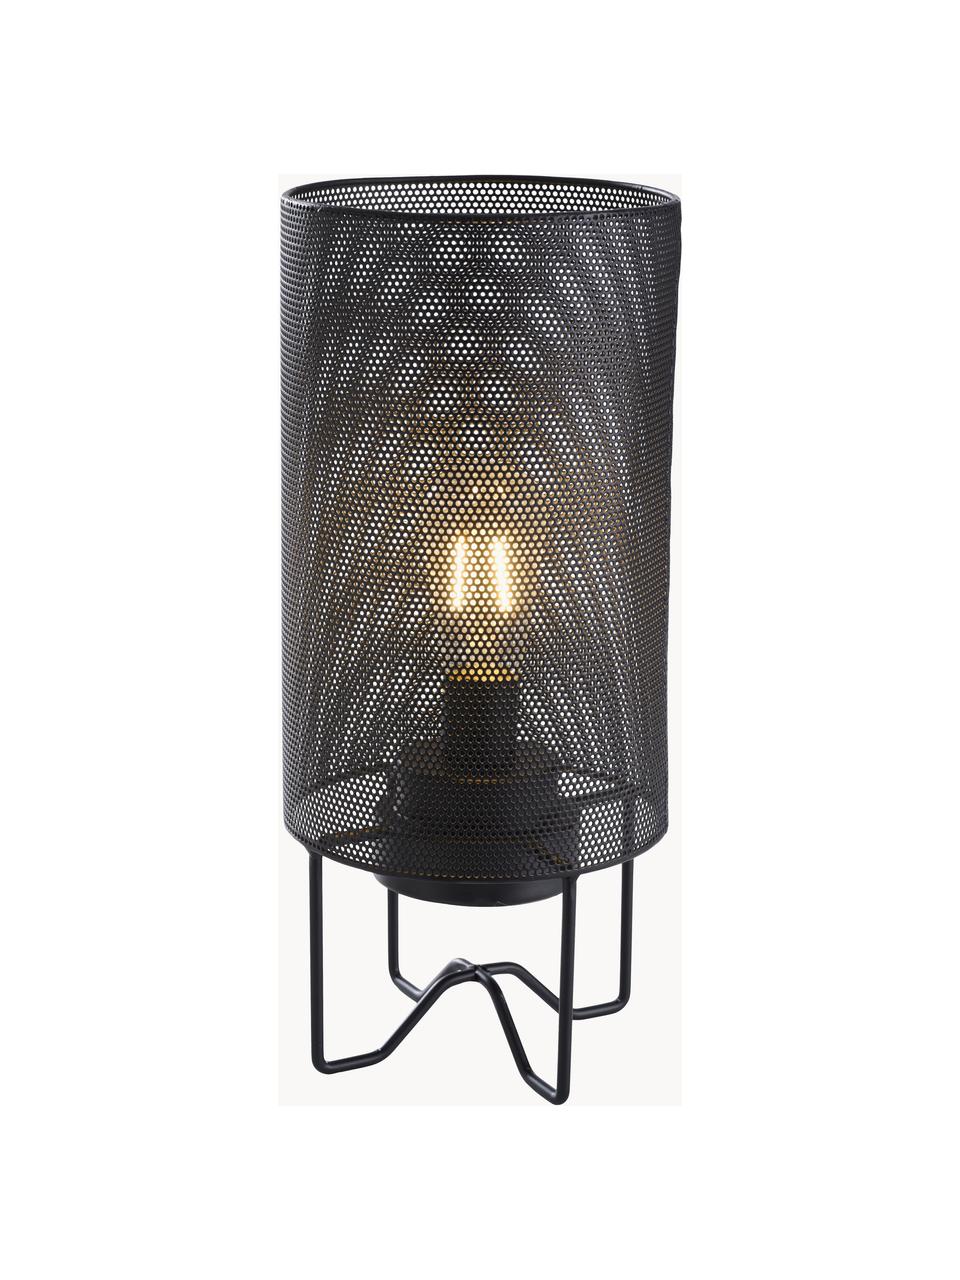 Mobilna lampa zewnętrzna LED Evening, Tworzywo sztuczne, metal powlekany, Czarny, Ø 15 x 33 cm